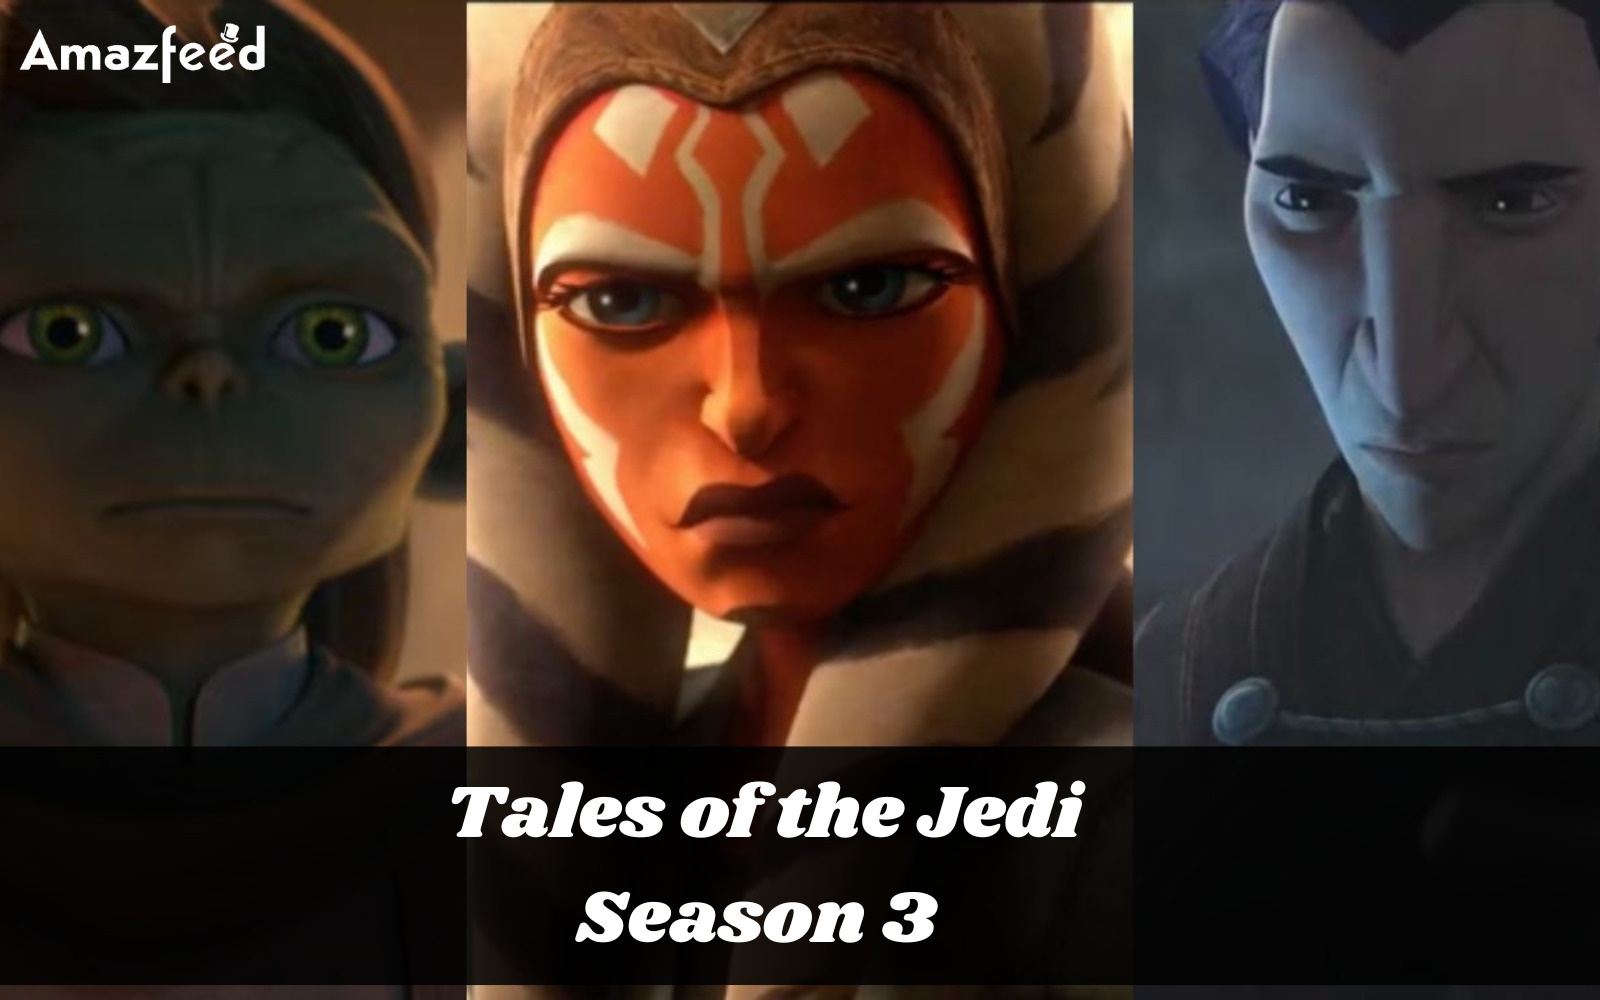 Tales of the Jedi Season 3 Release Date